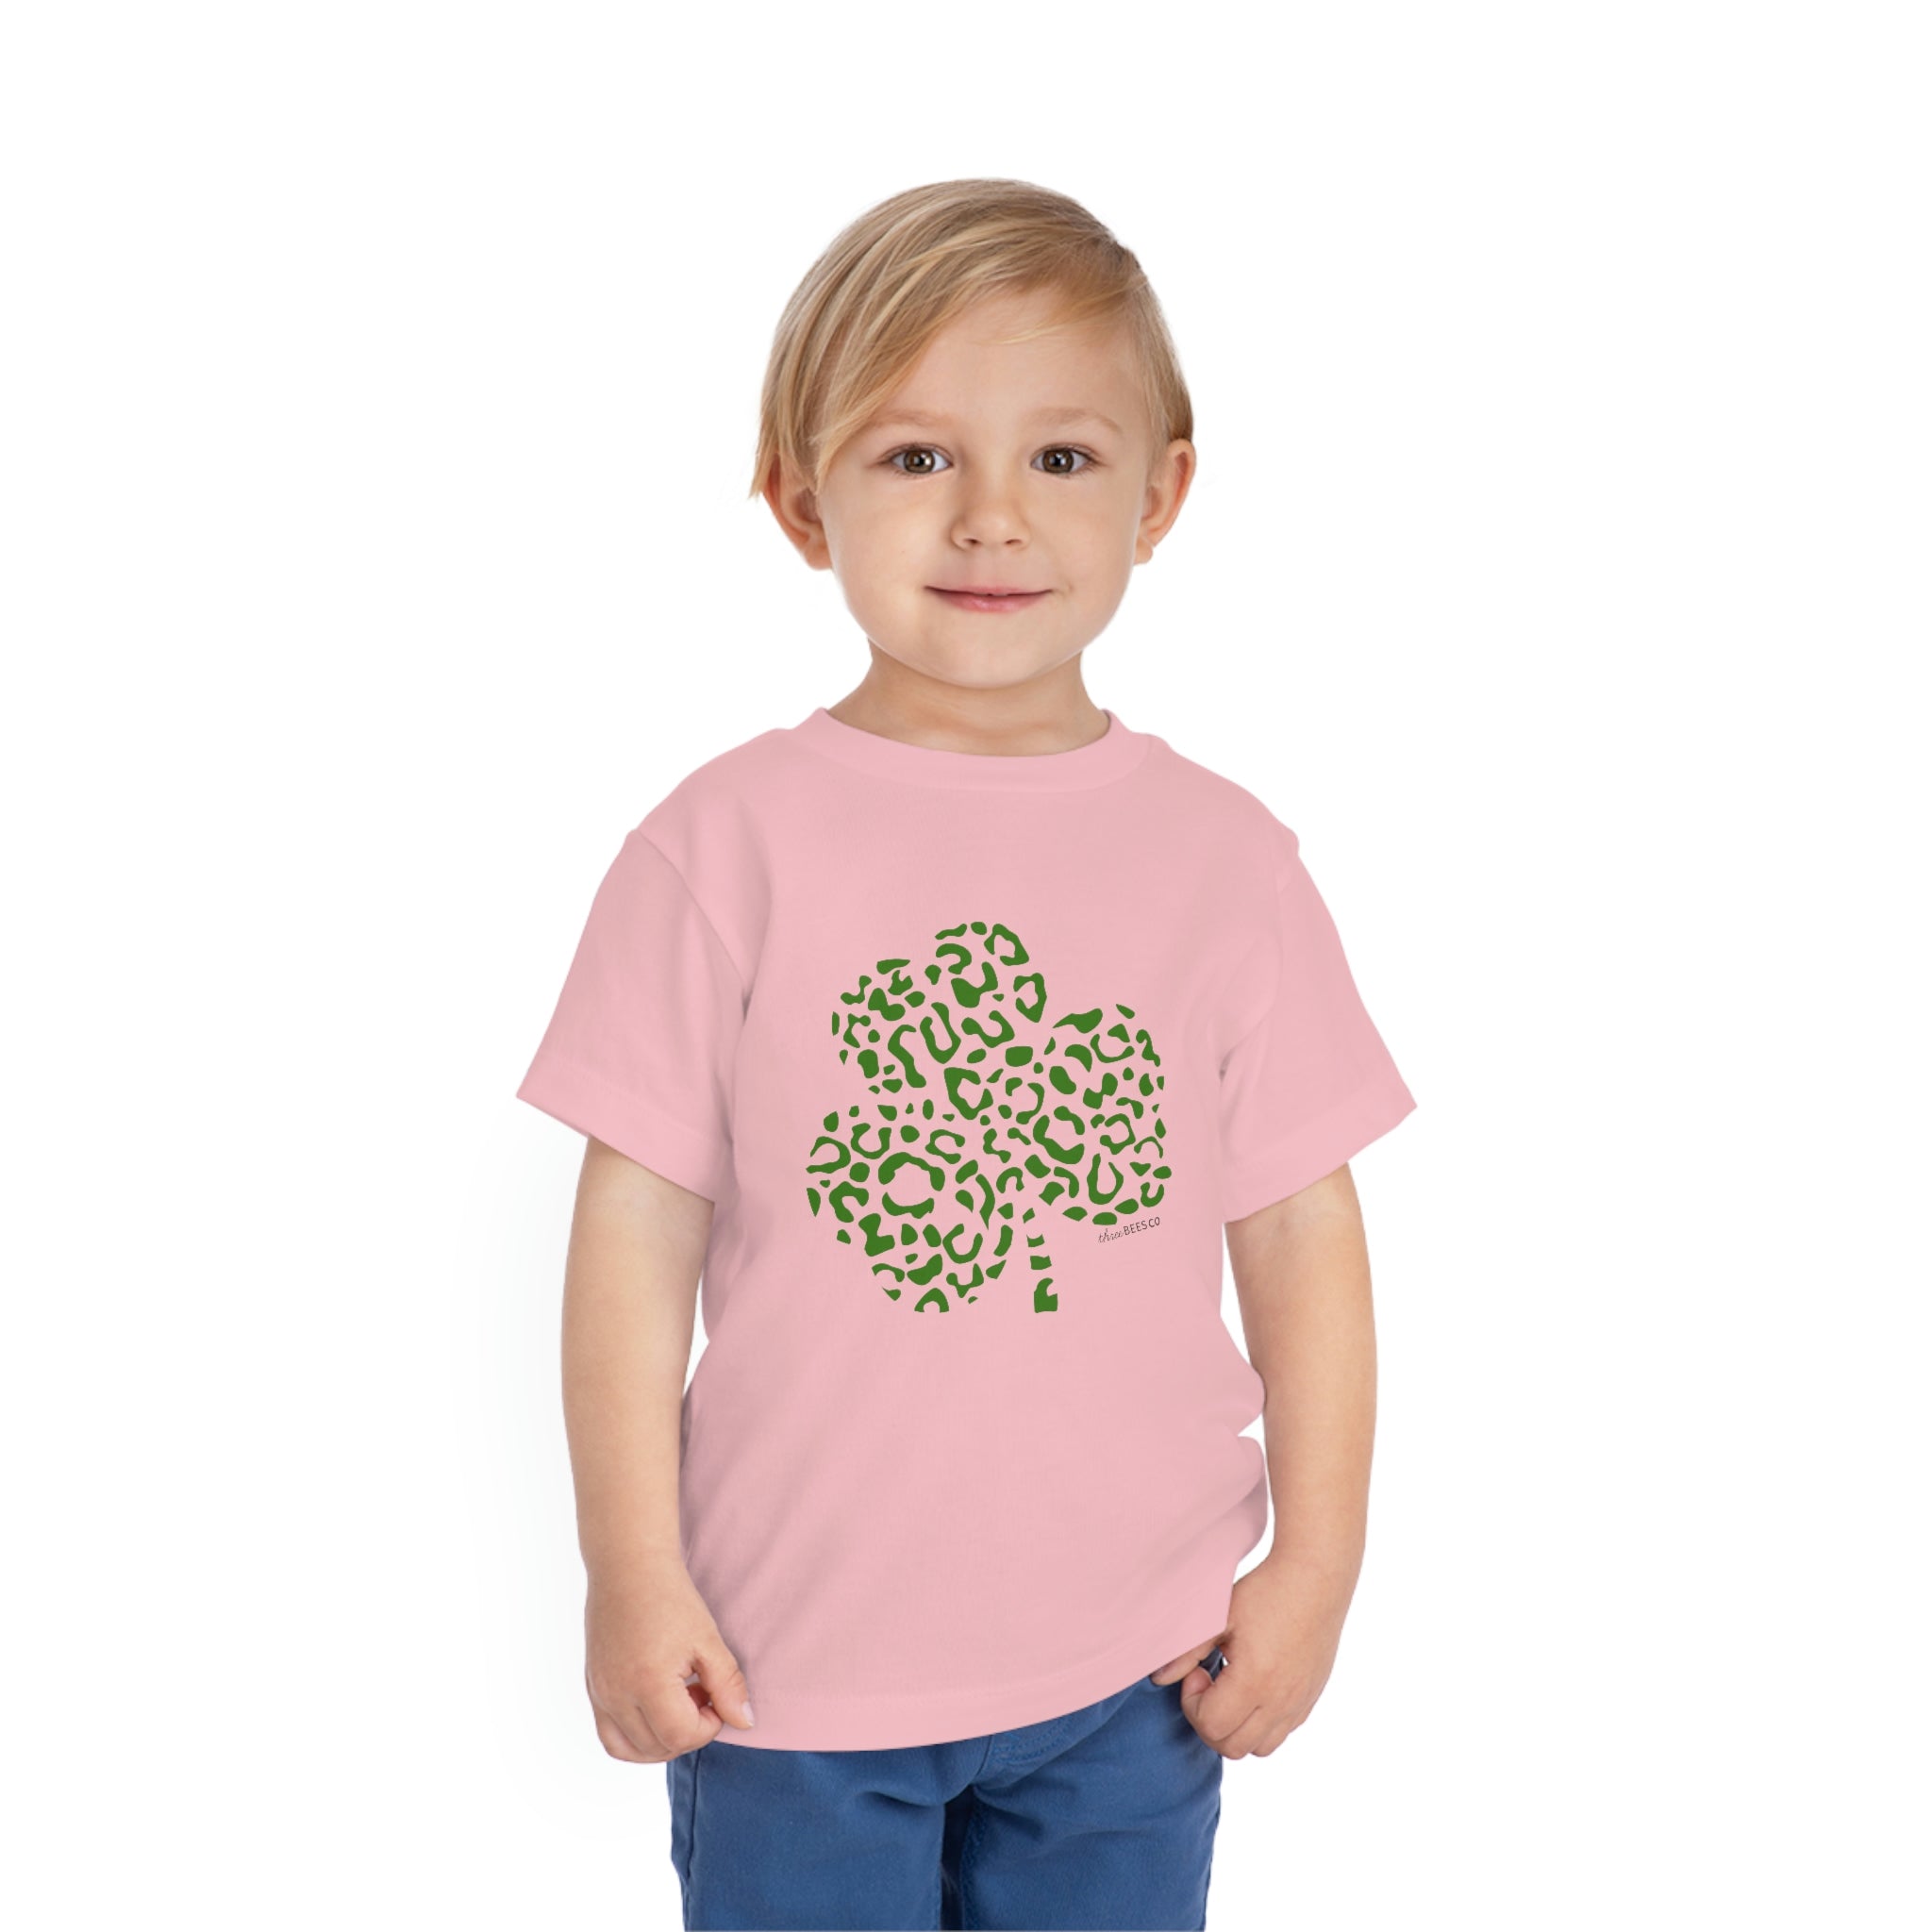 Leopard Clover Unisex Toddler T-Shirt